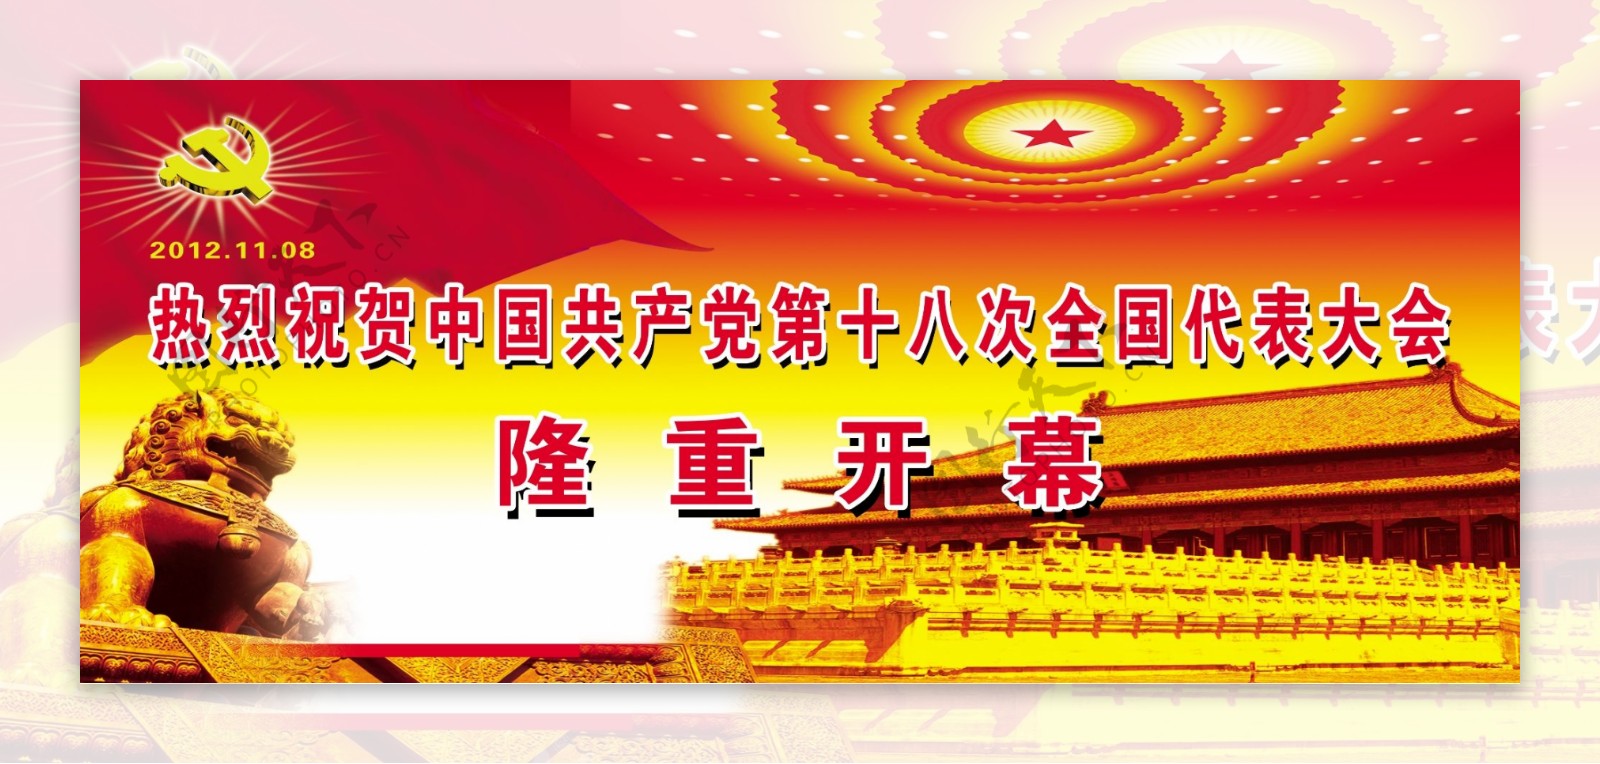 中国共产党第十八次全国代表大会隆重开幕图片